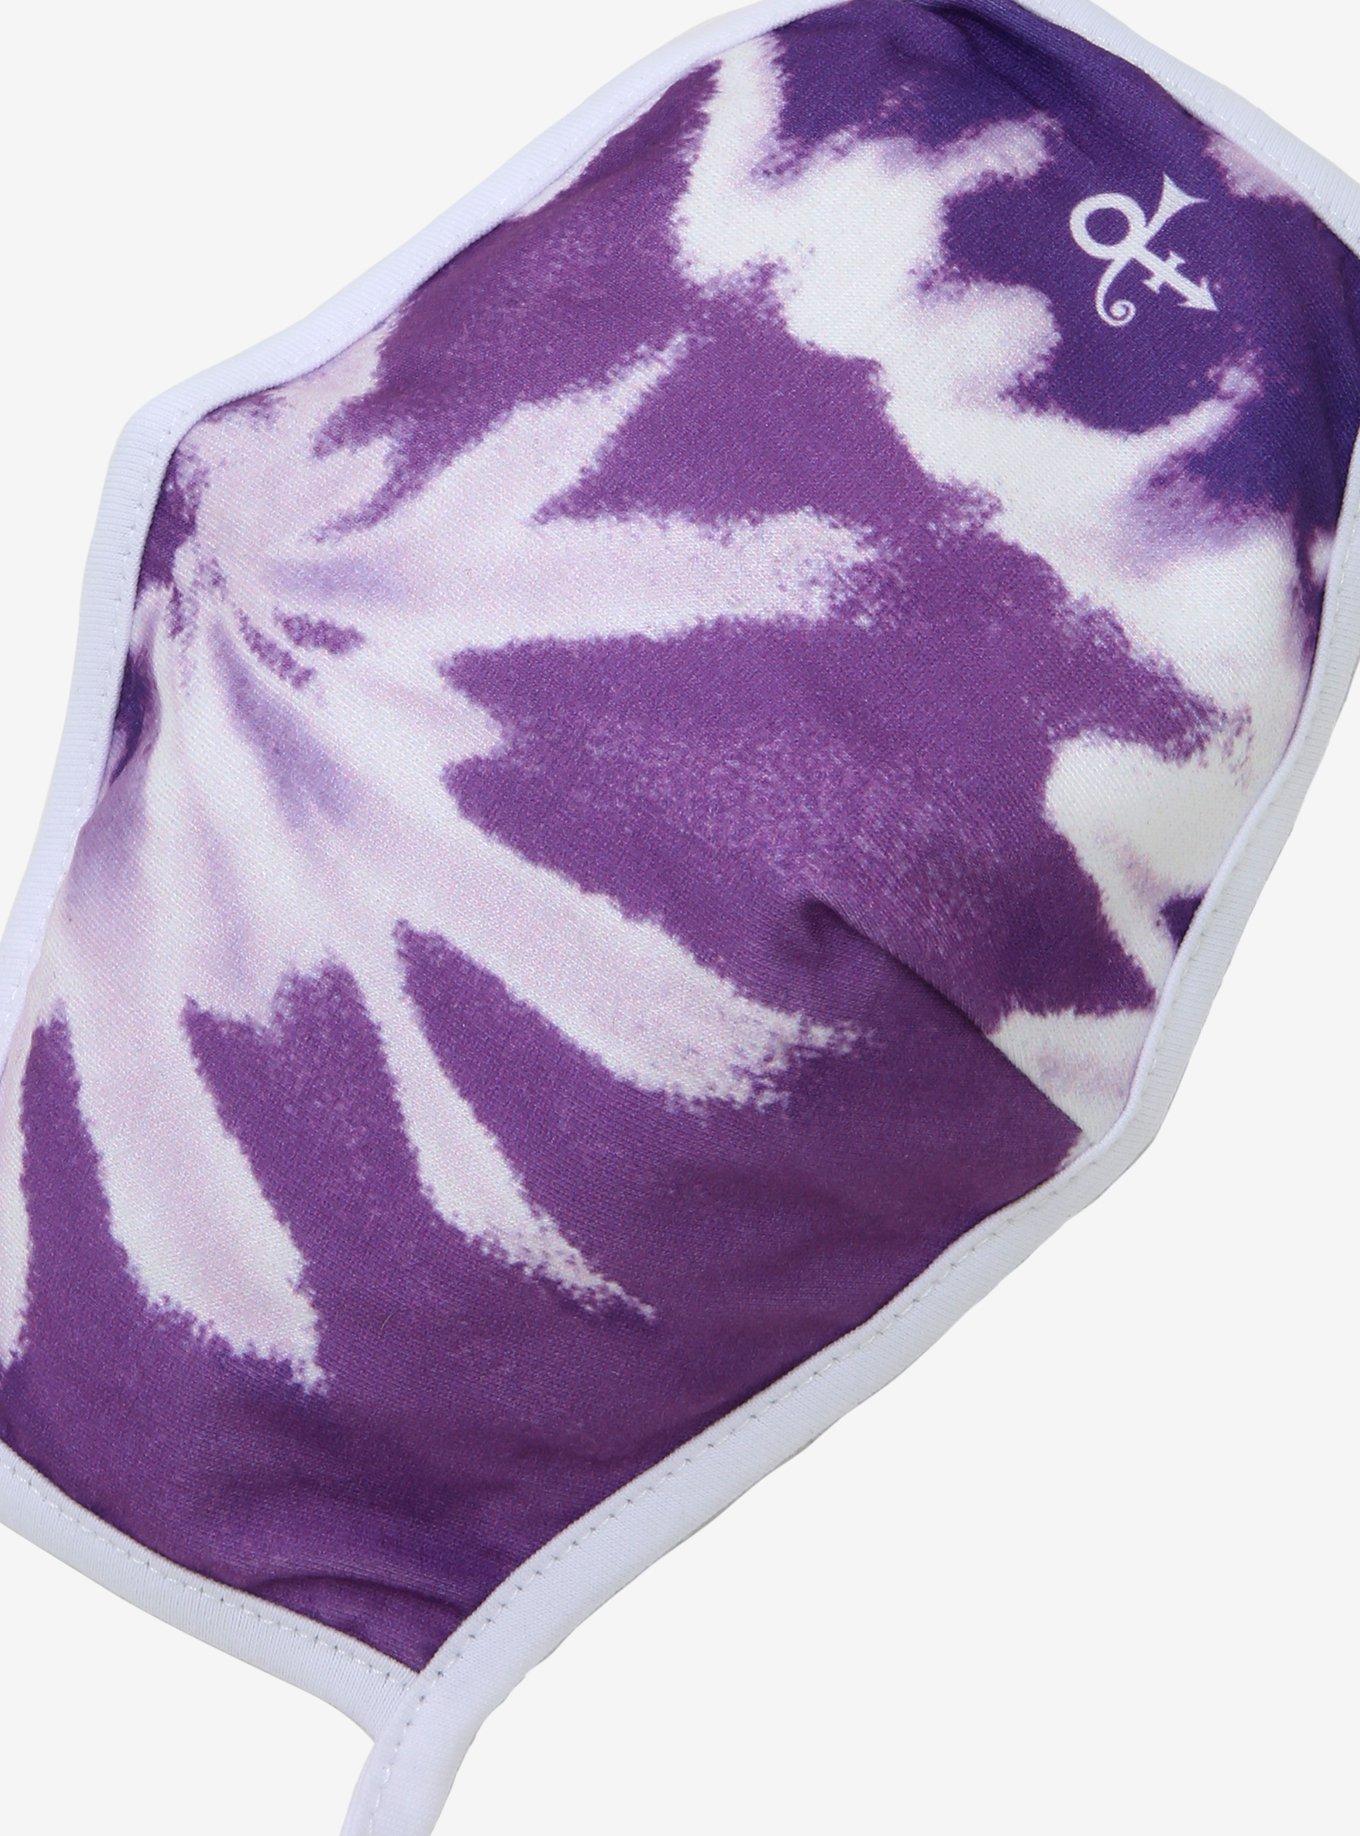 Prince Purple Tie-Dye Fashion Face Mask, , alternate